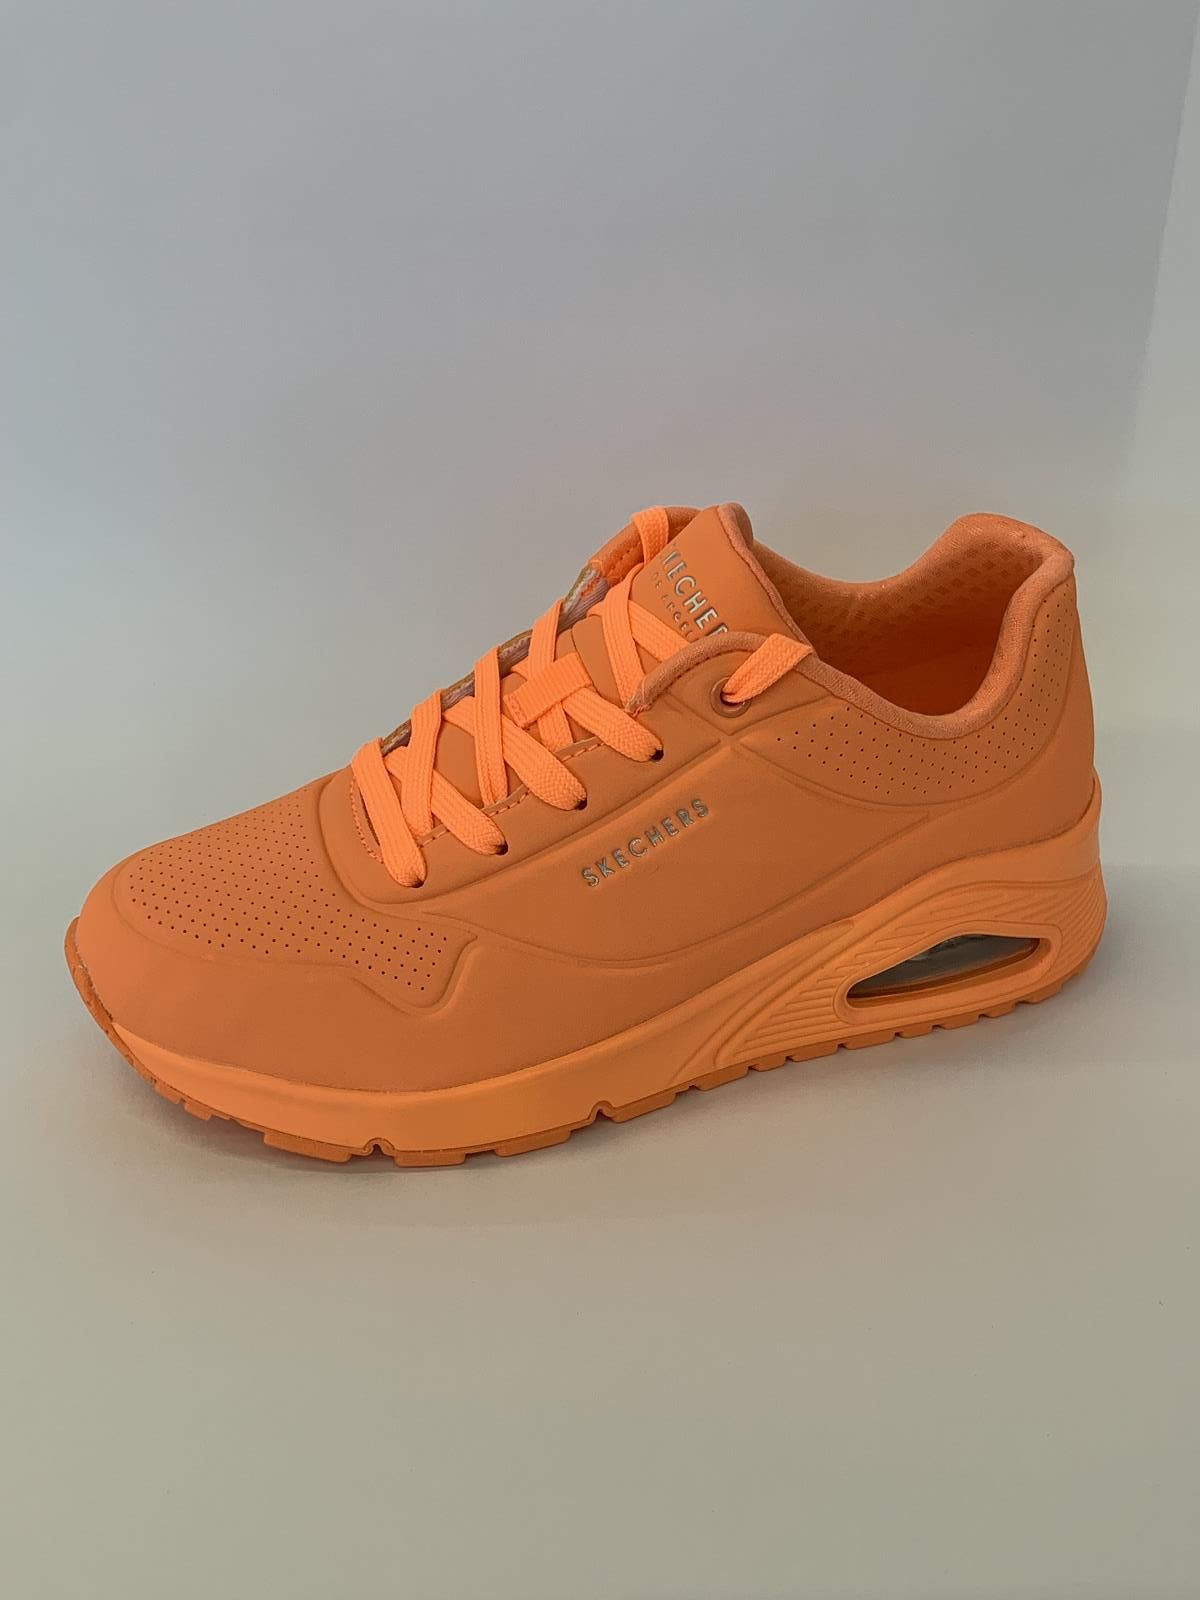 Heel boos Lang Misbruik Skechers Sneaker Oranje dames (Runner AirMax Fluo - 73667) - Schoenen Luca